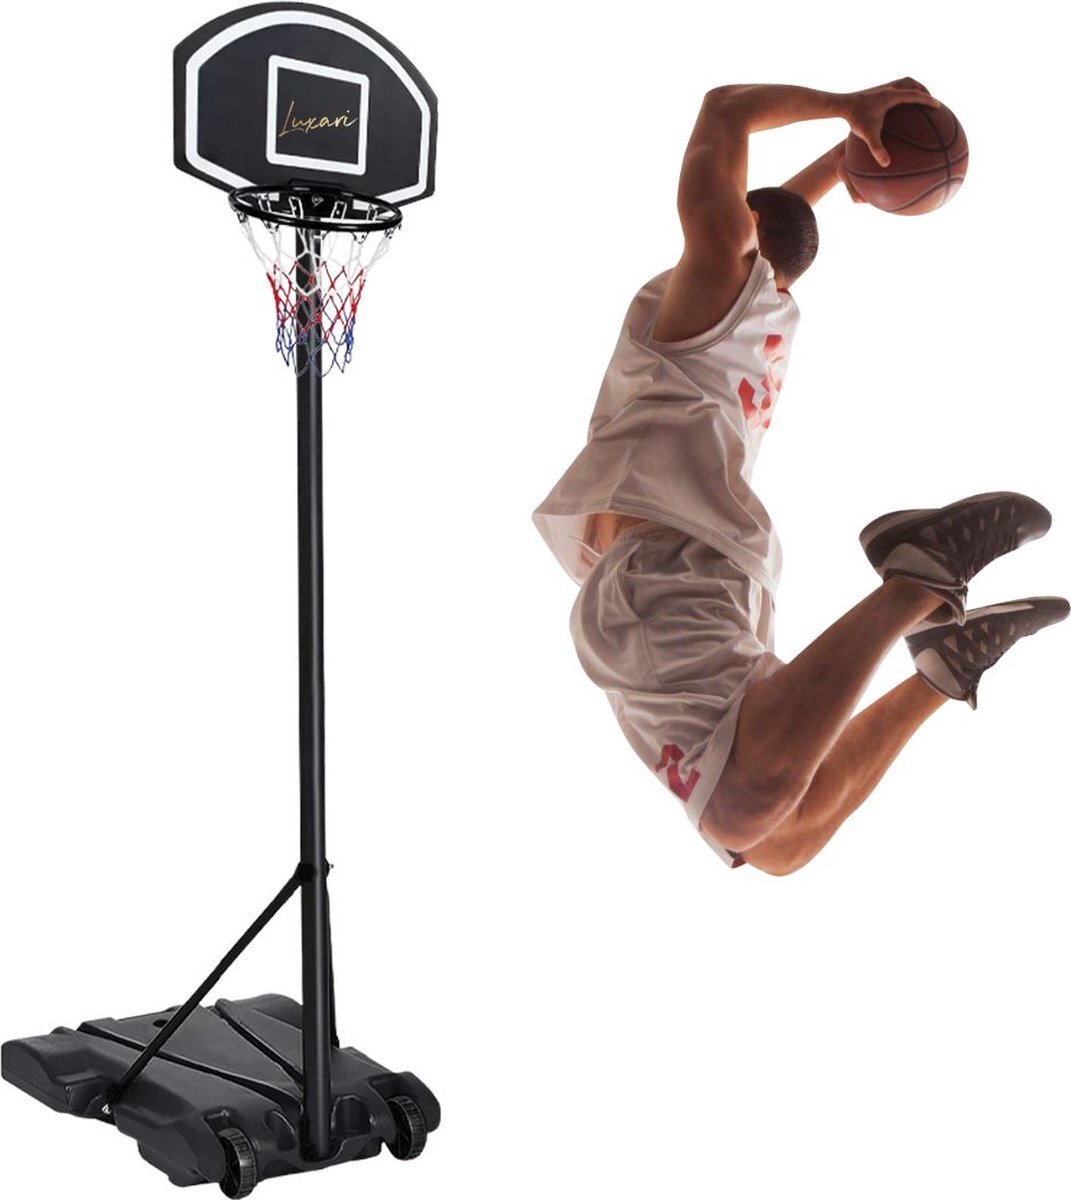 Luxari Basketbalpaal Pro - In Hoogte Verstelbaar: 180 - 215 cm - Basketbalring - Stevige Voetstuk - Zwart